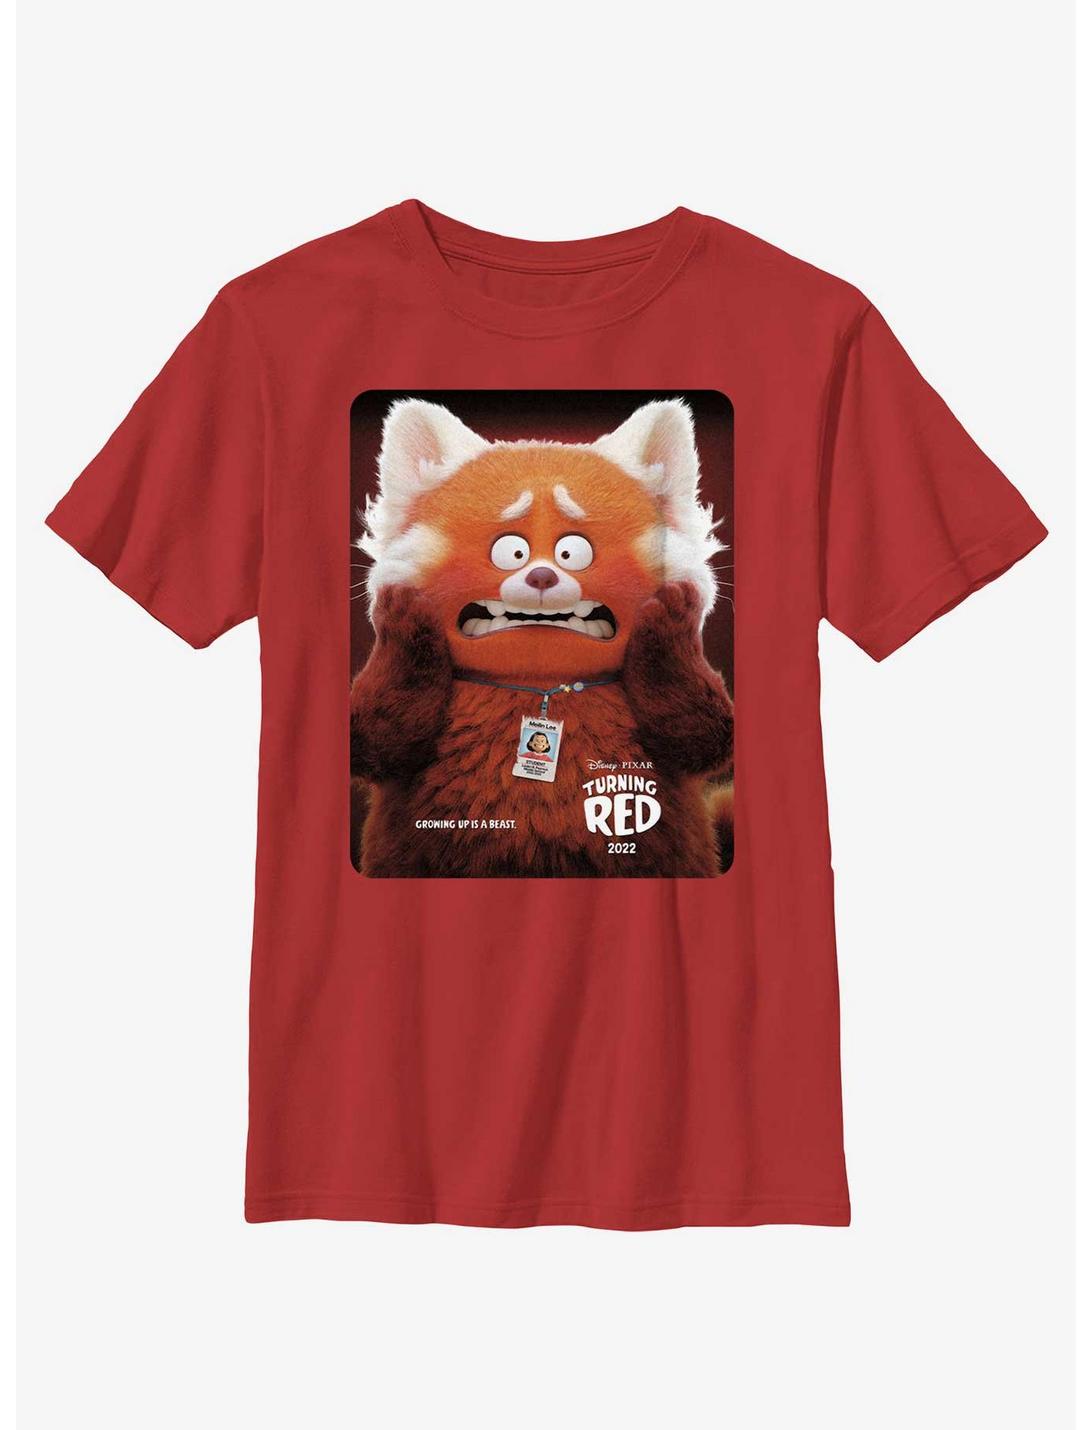 Disney Pixar Turning Red Panda Poster Youth T-Shirt, RED, hi-res